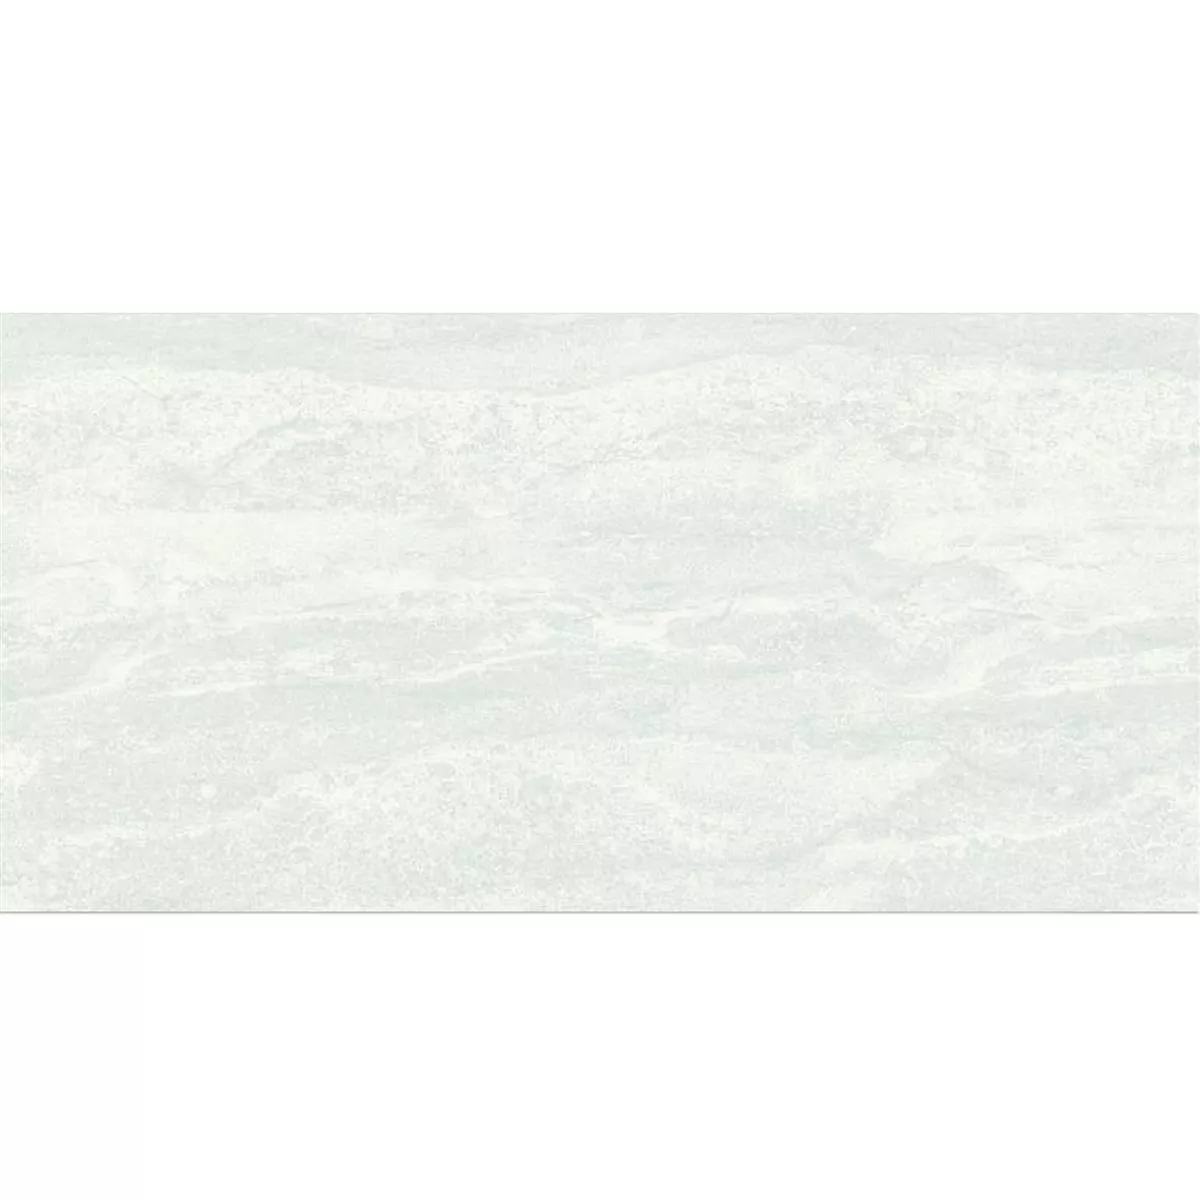 Vzorek Obkladačka Bellinzona Krémová Strukturovaný 30x60cm